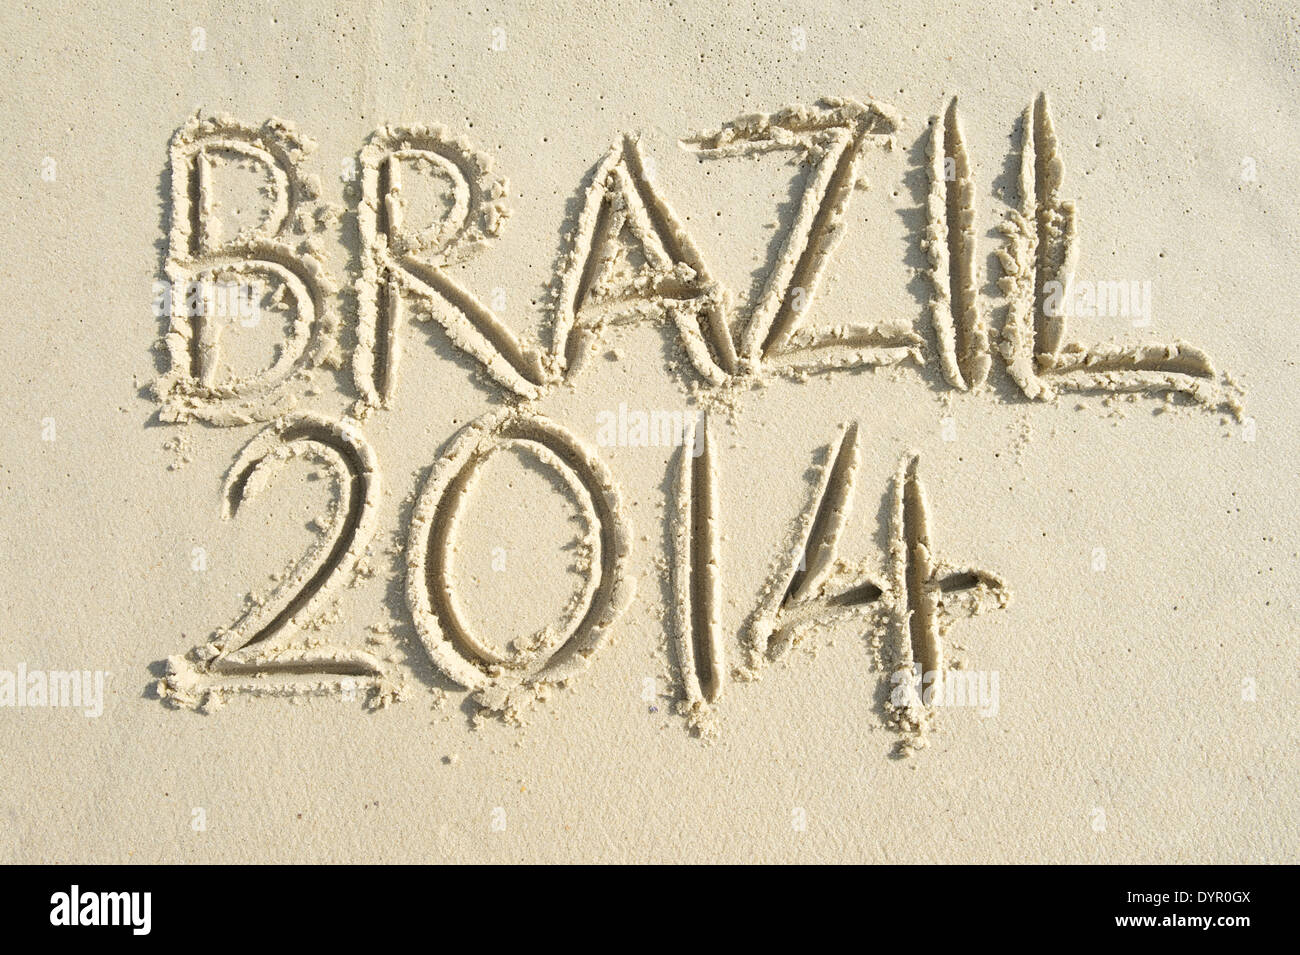 Brésil 2014 message manuscrit ensoleillée sur la plage de sable brésilien lisse Banque D'Images